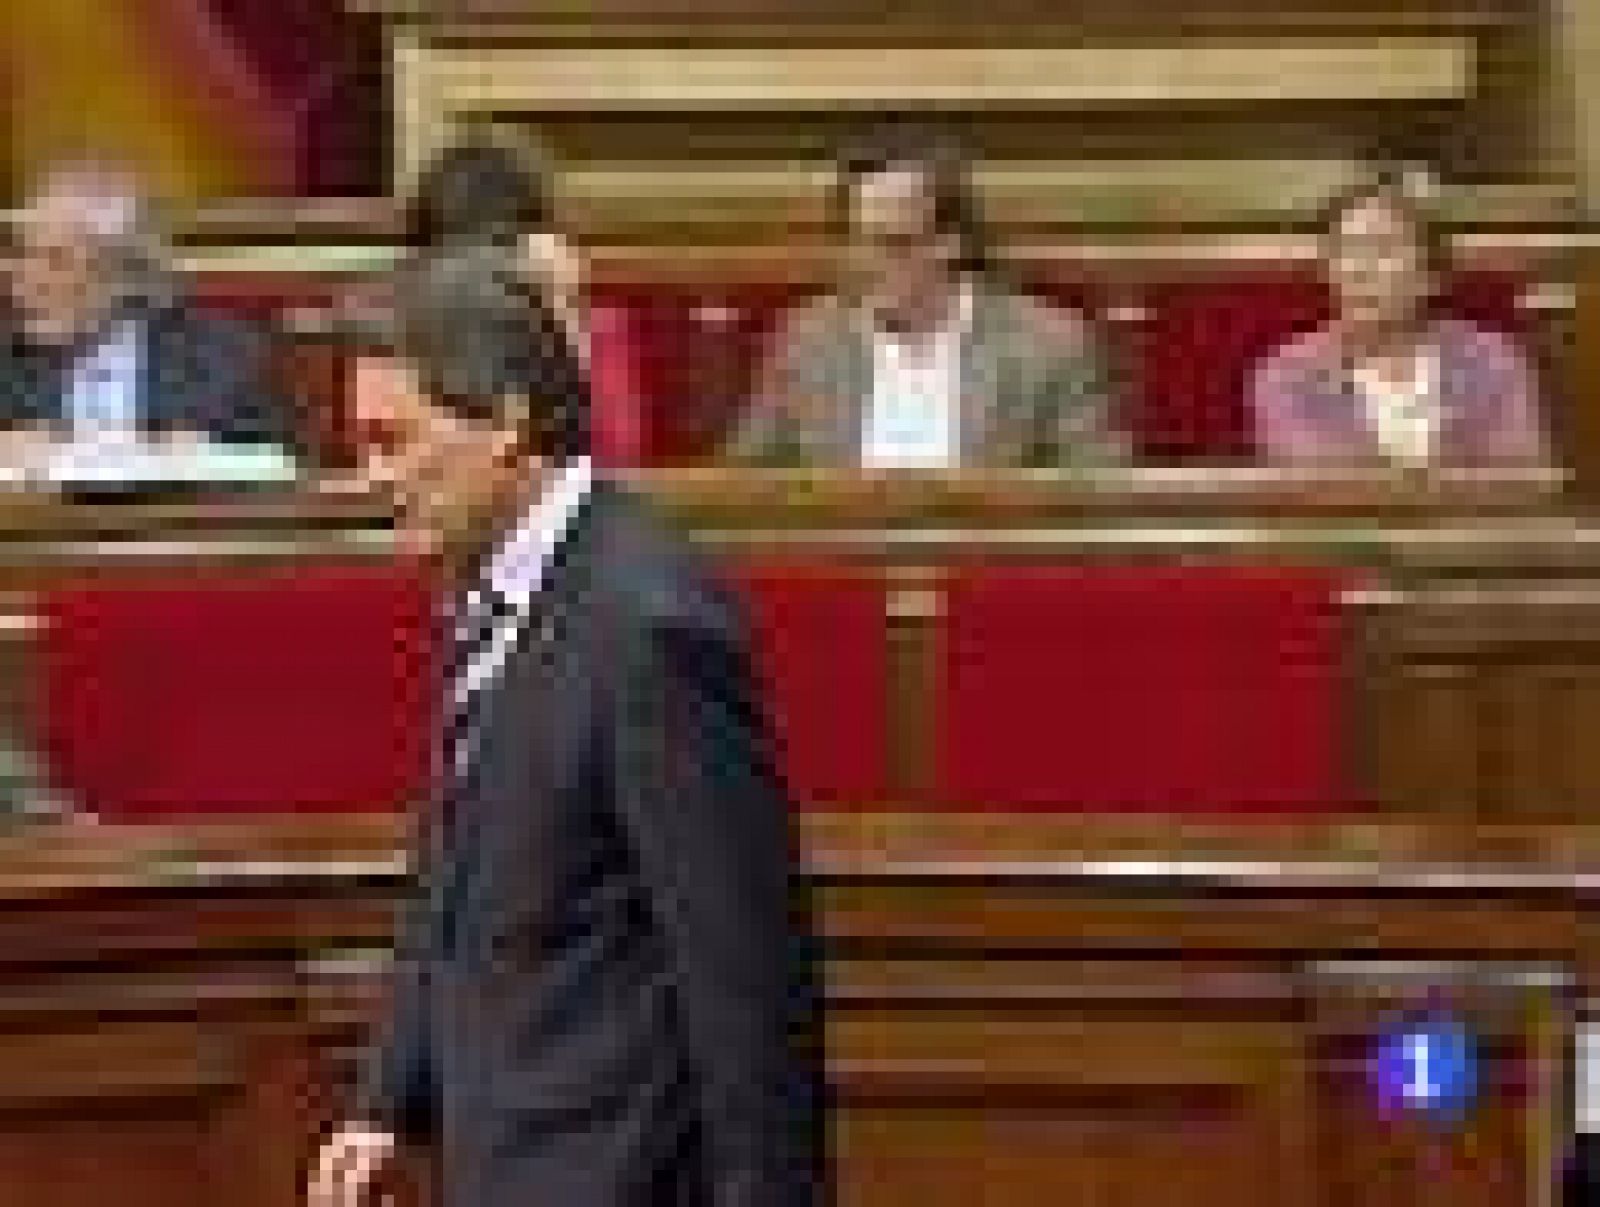  La Fiscalía abre expediente para investigar la violencia en el exterior del Parlamento de Cataluña